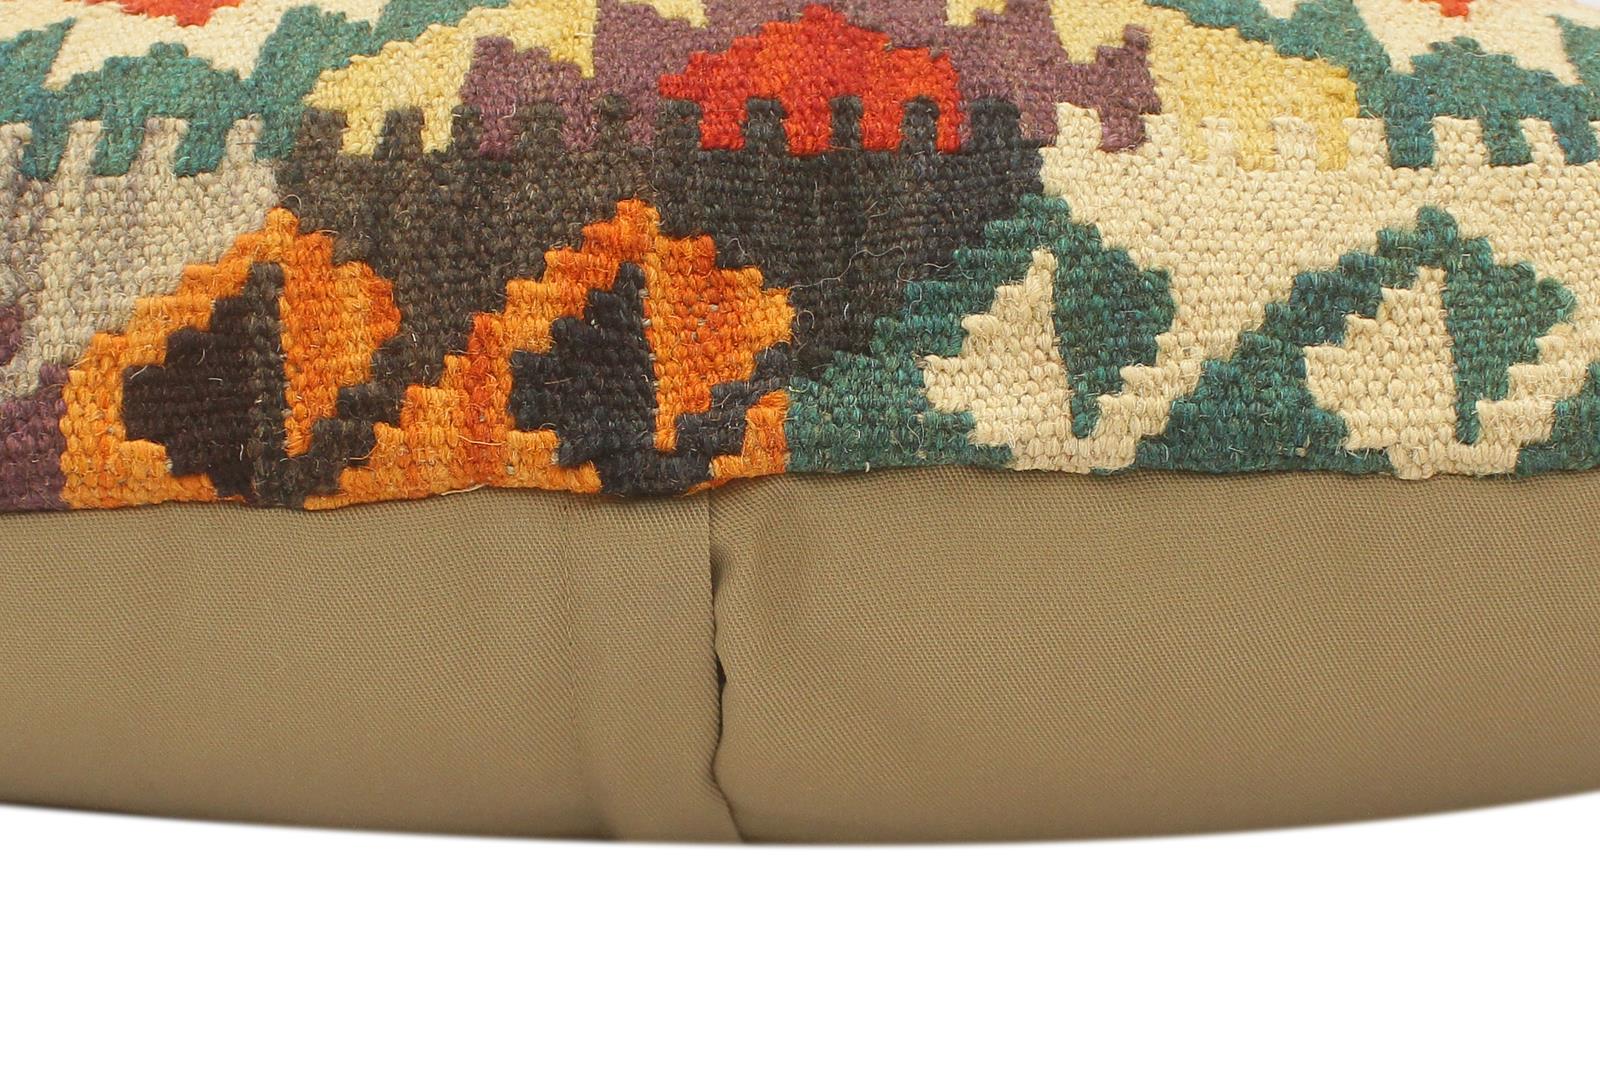 handmade Tribal Rust Beige Hand-Woven RECTANGLE 100% WOOL Pillow